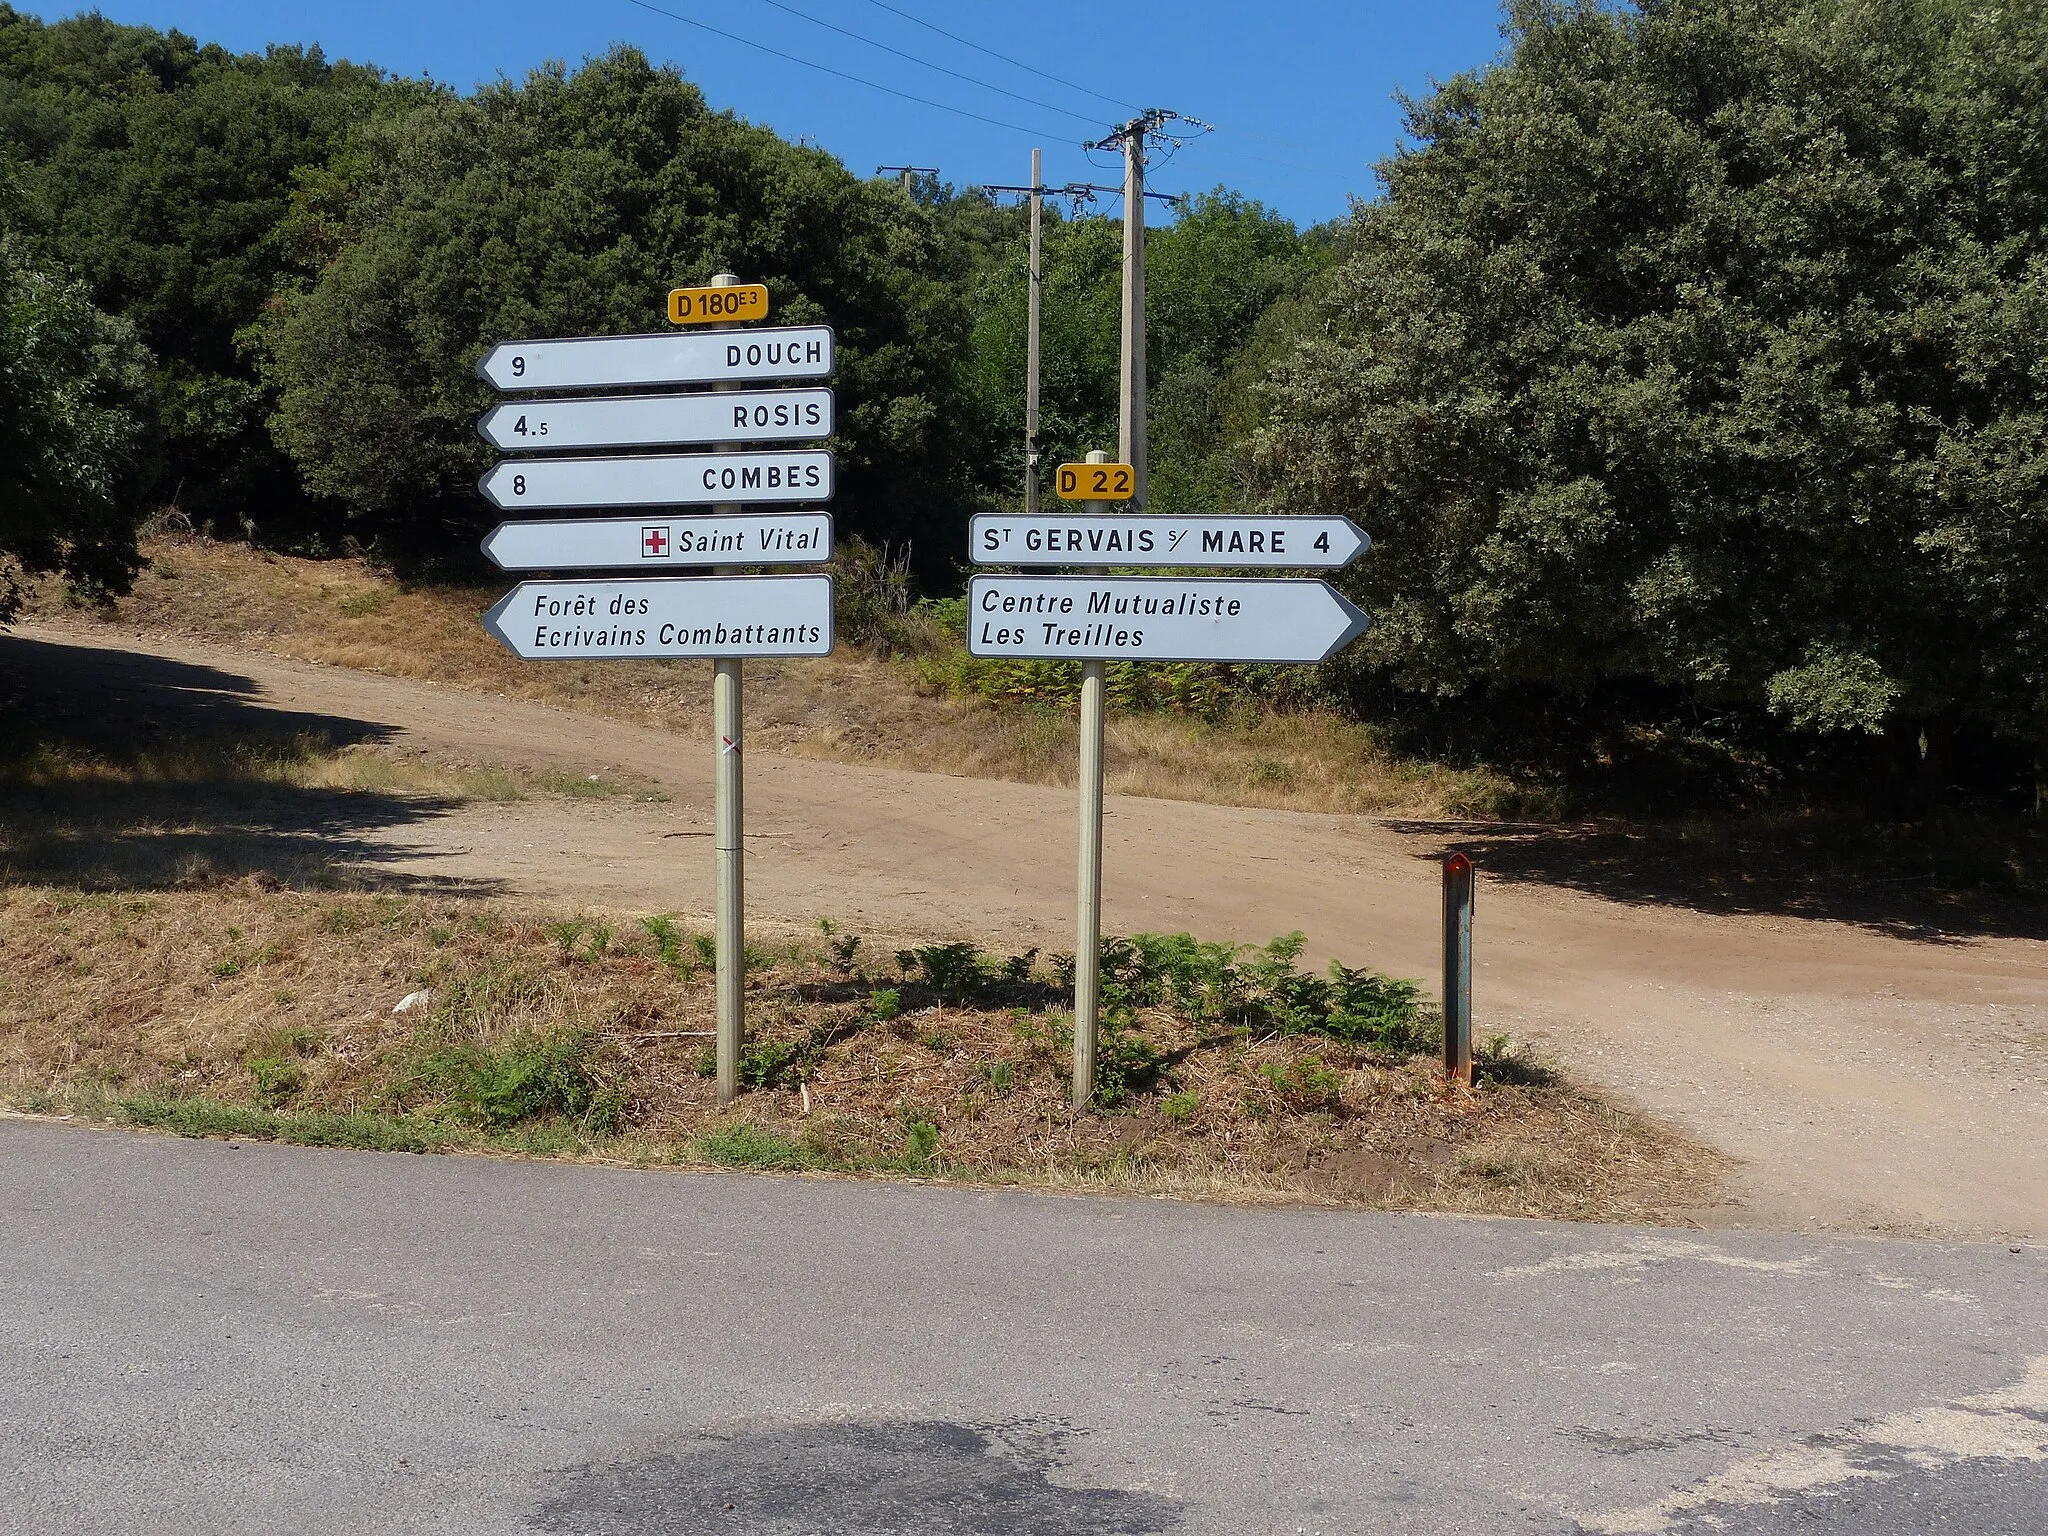 Photo showing: Panneaux D21a et D21b à l'intersection de la D180E3 et de la D22, Rosis, département de l'Hérault, France.